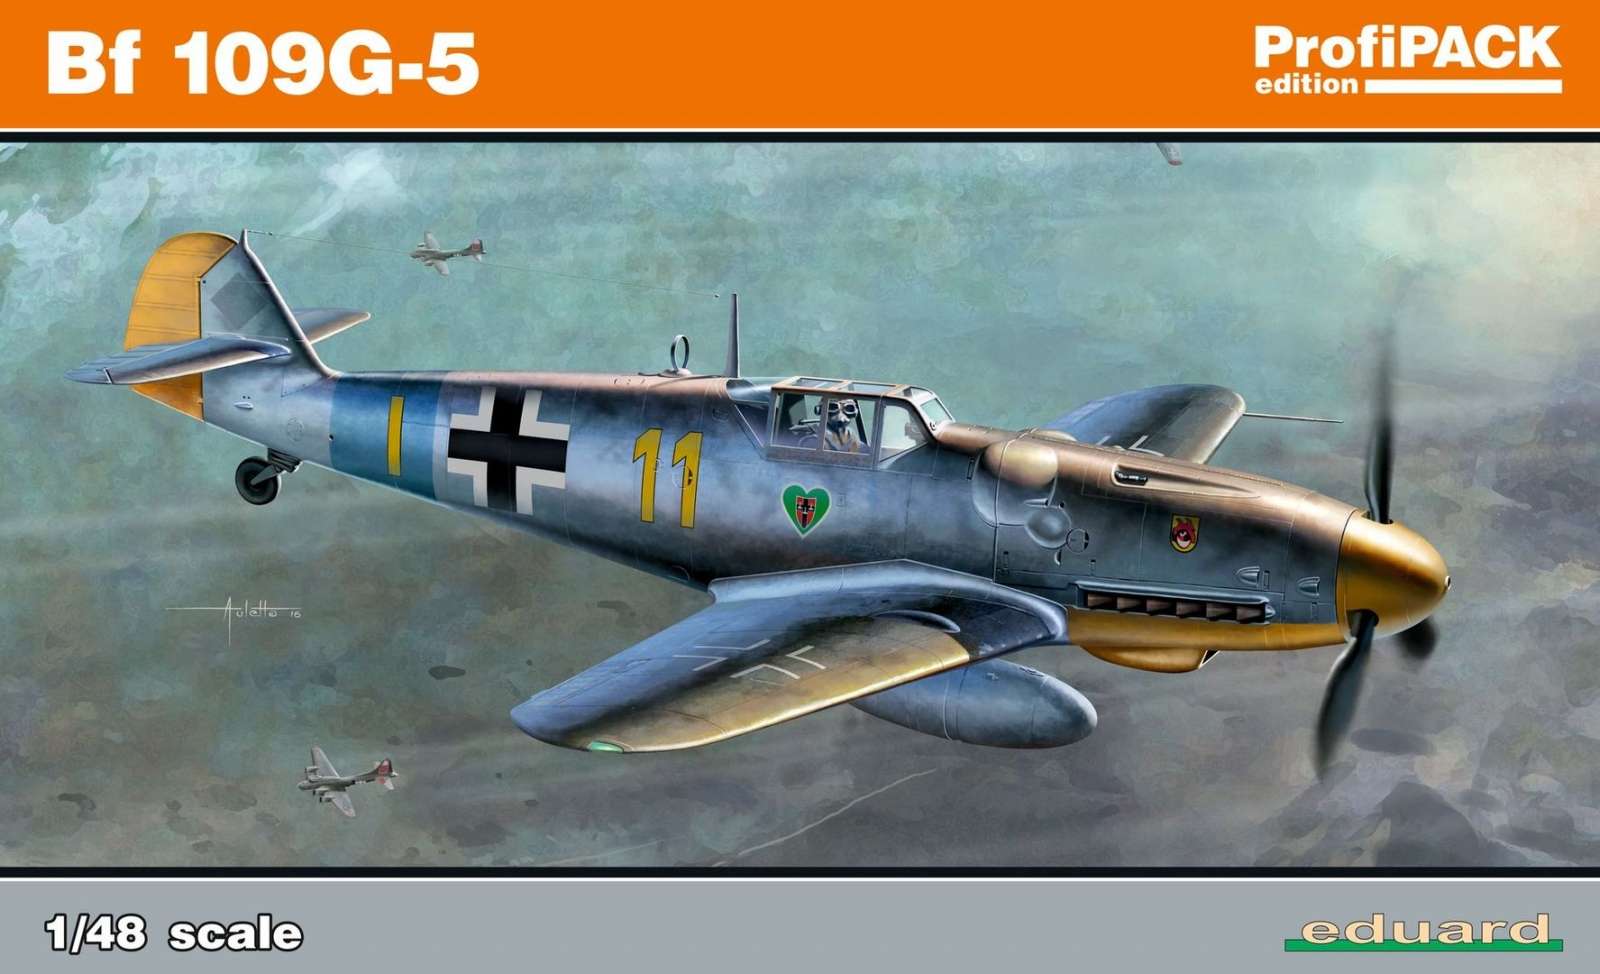 Niemiecki myśliwiec Messerschmitt Bf 109G-5, plastikowy model do sklejania Eduard 82112 w skali 1:48-image_Eduard_82112_1